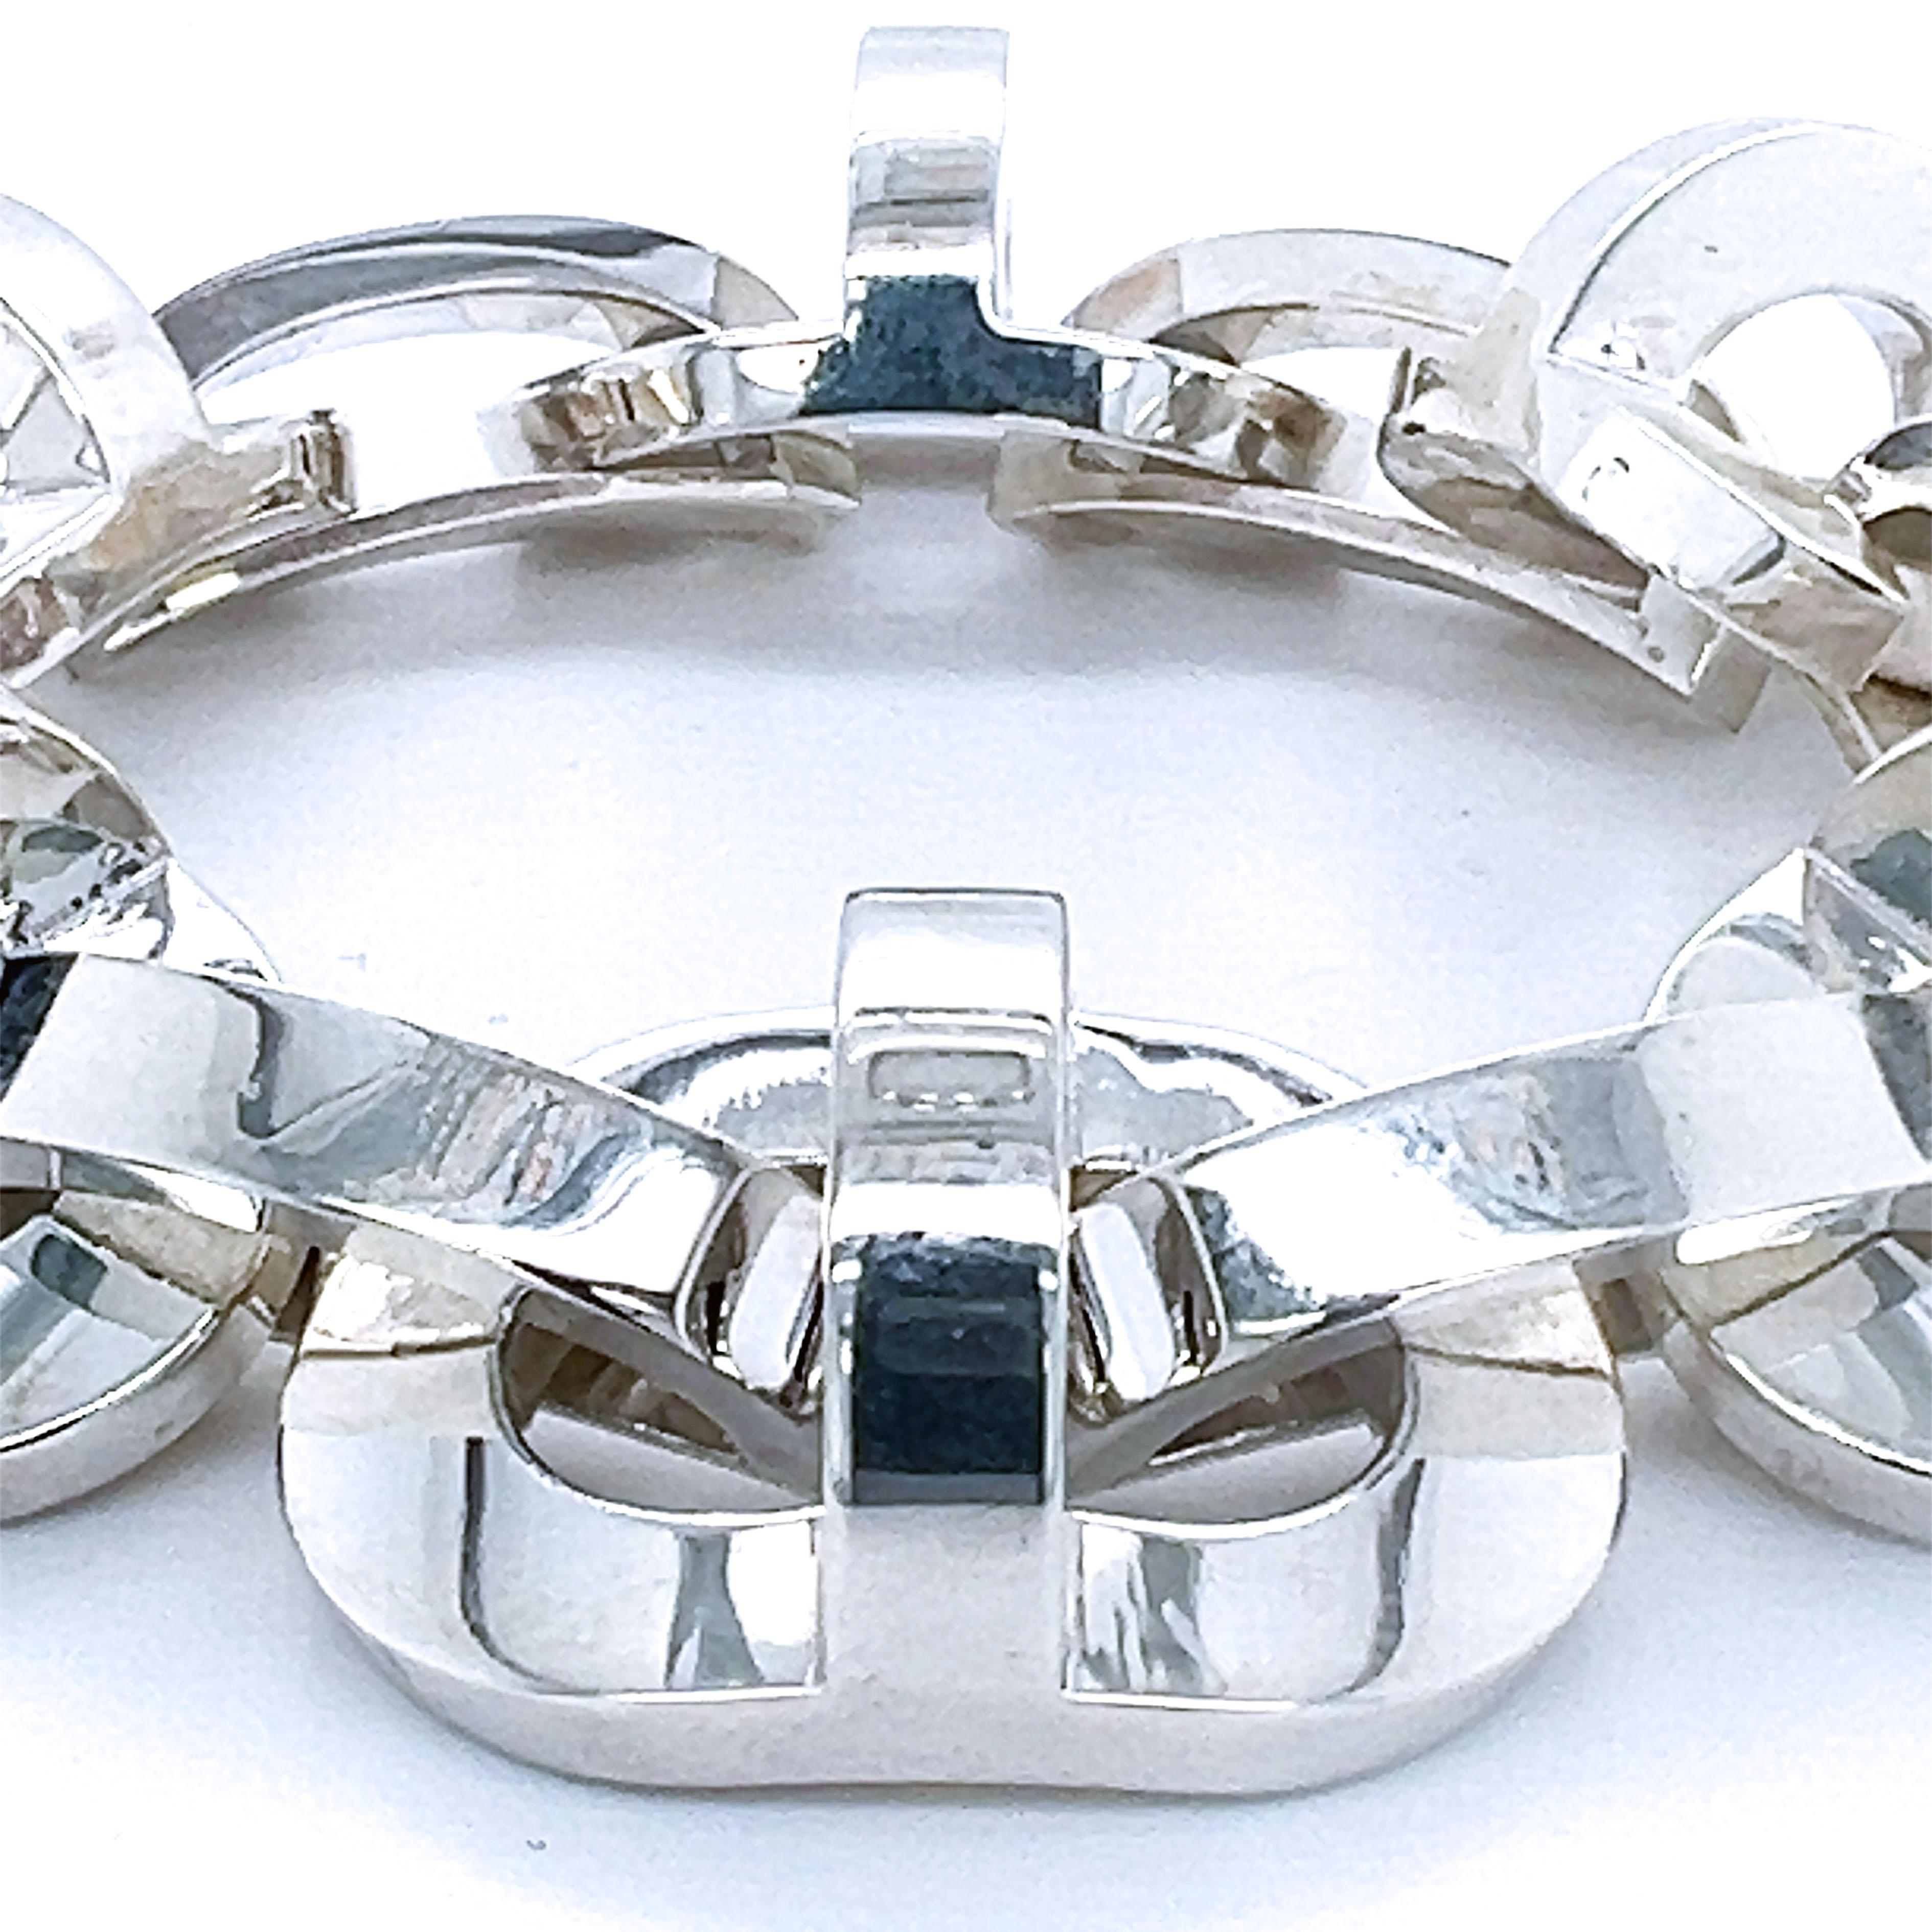 Extrêmement rare, magnifique bracelet Hermès : une pièce Chic mais intemporelle, absolument Icone d'Hermès, le soi-disant 